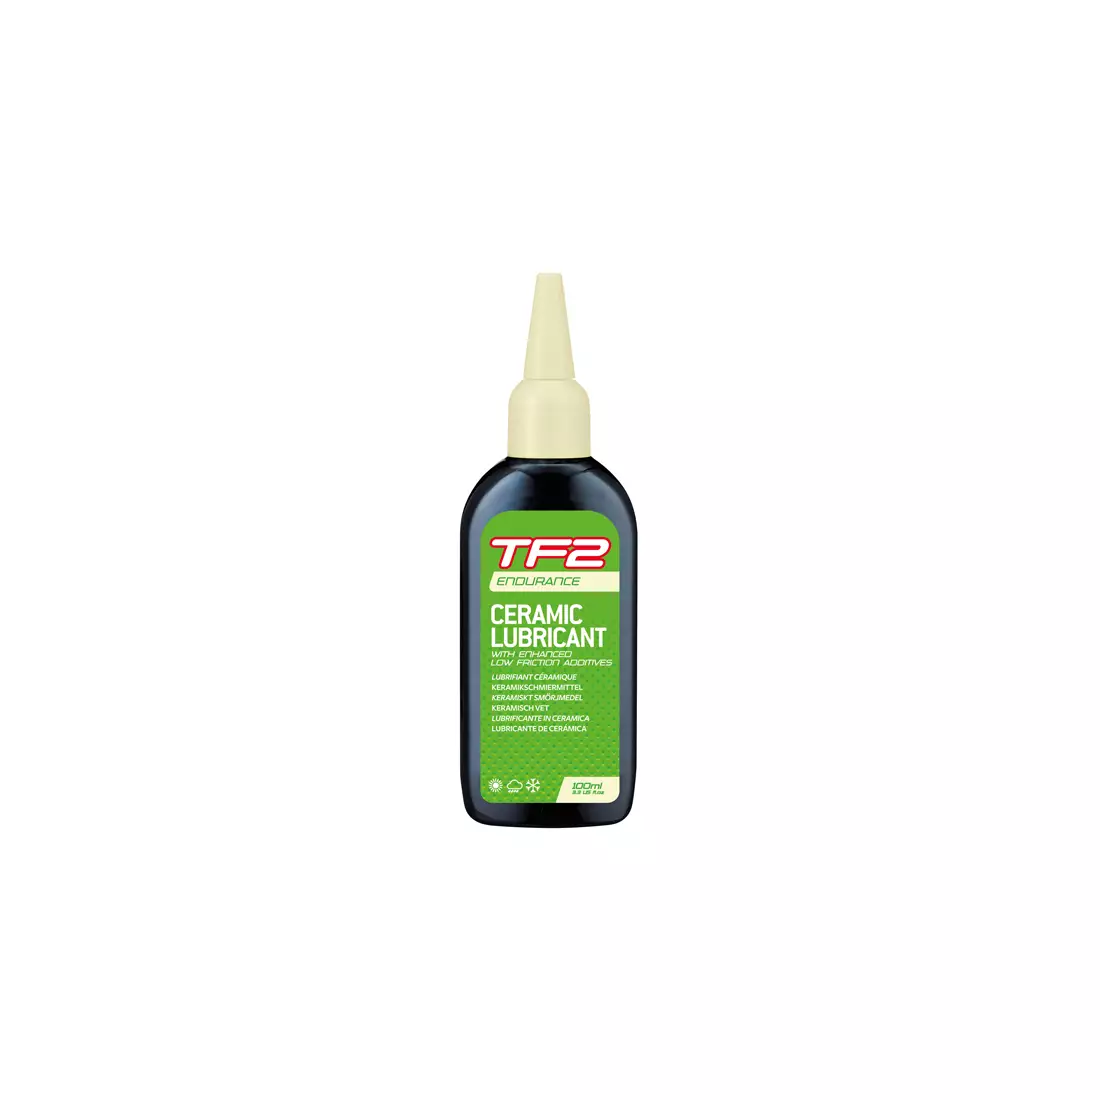 WELDTITE Kettenöl tf2 endurance ceramic lubricant (trockene und nasse Bedingungen) 100ml WLD-03065